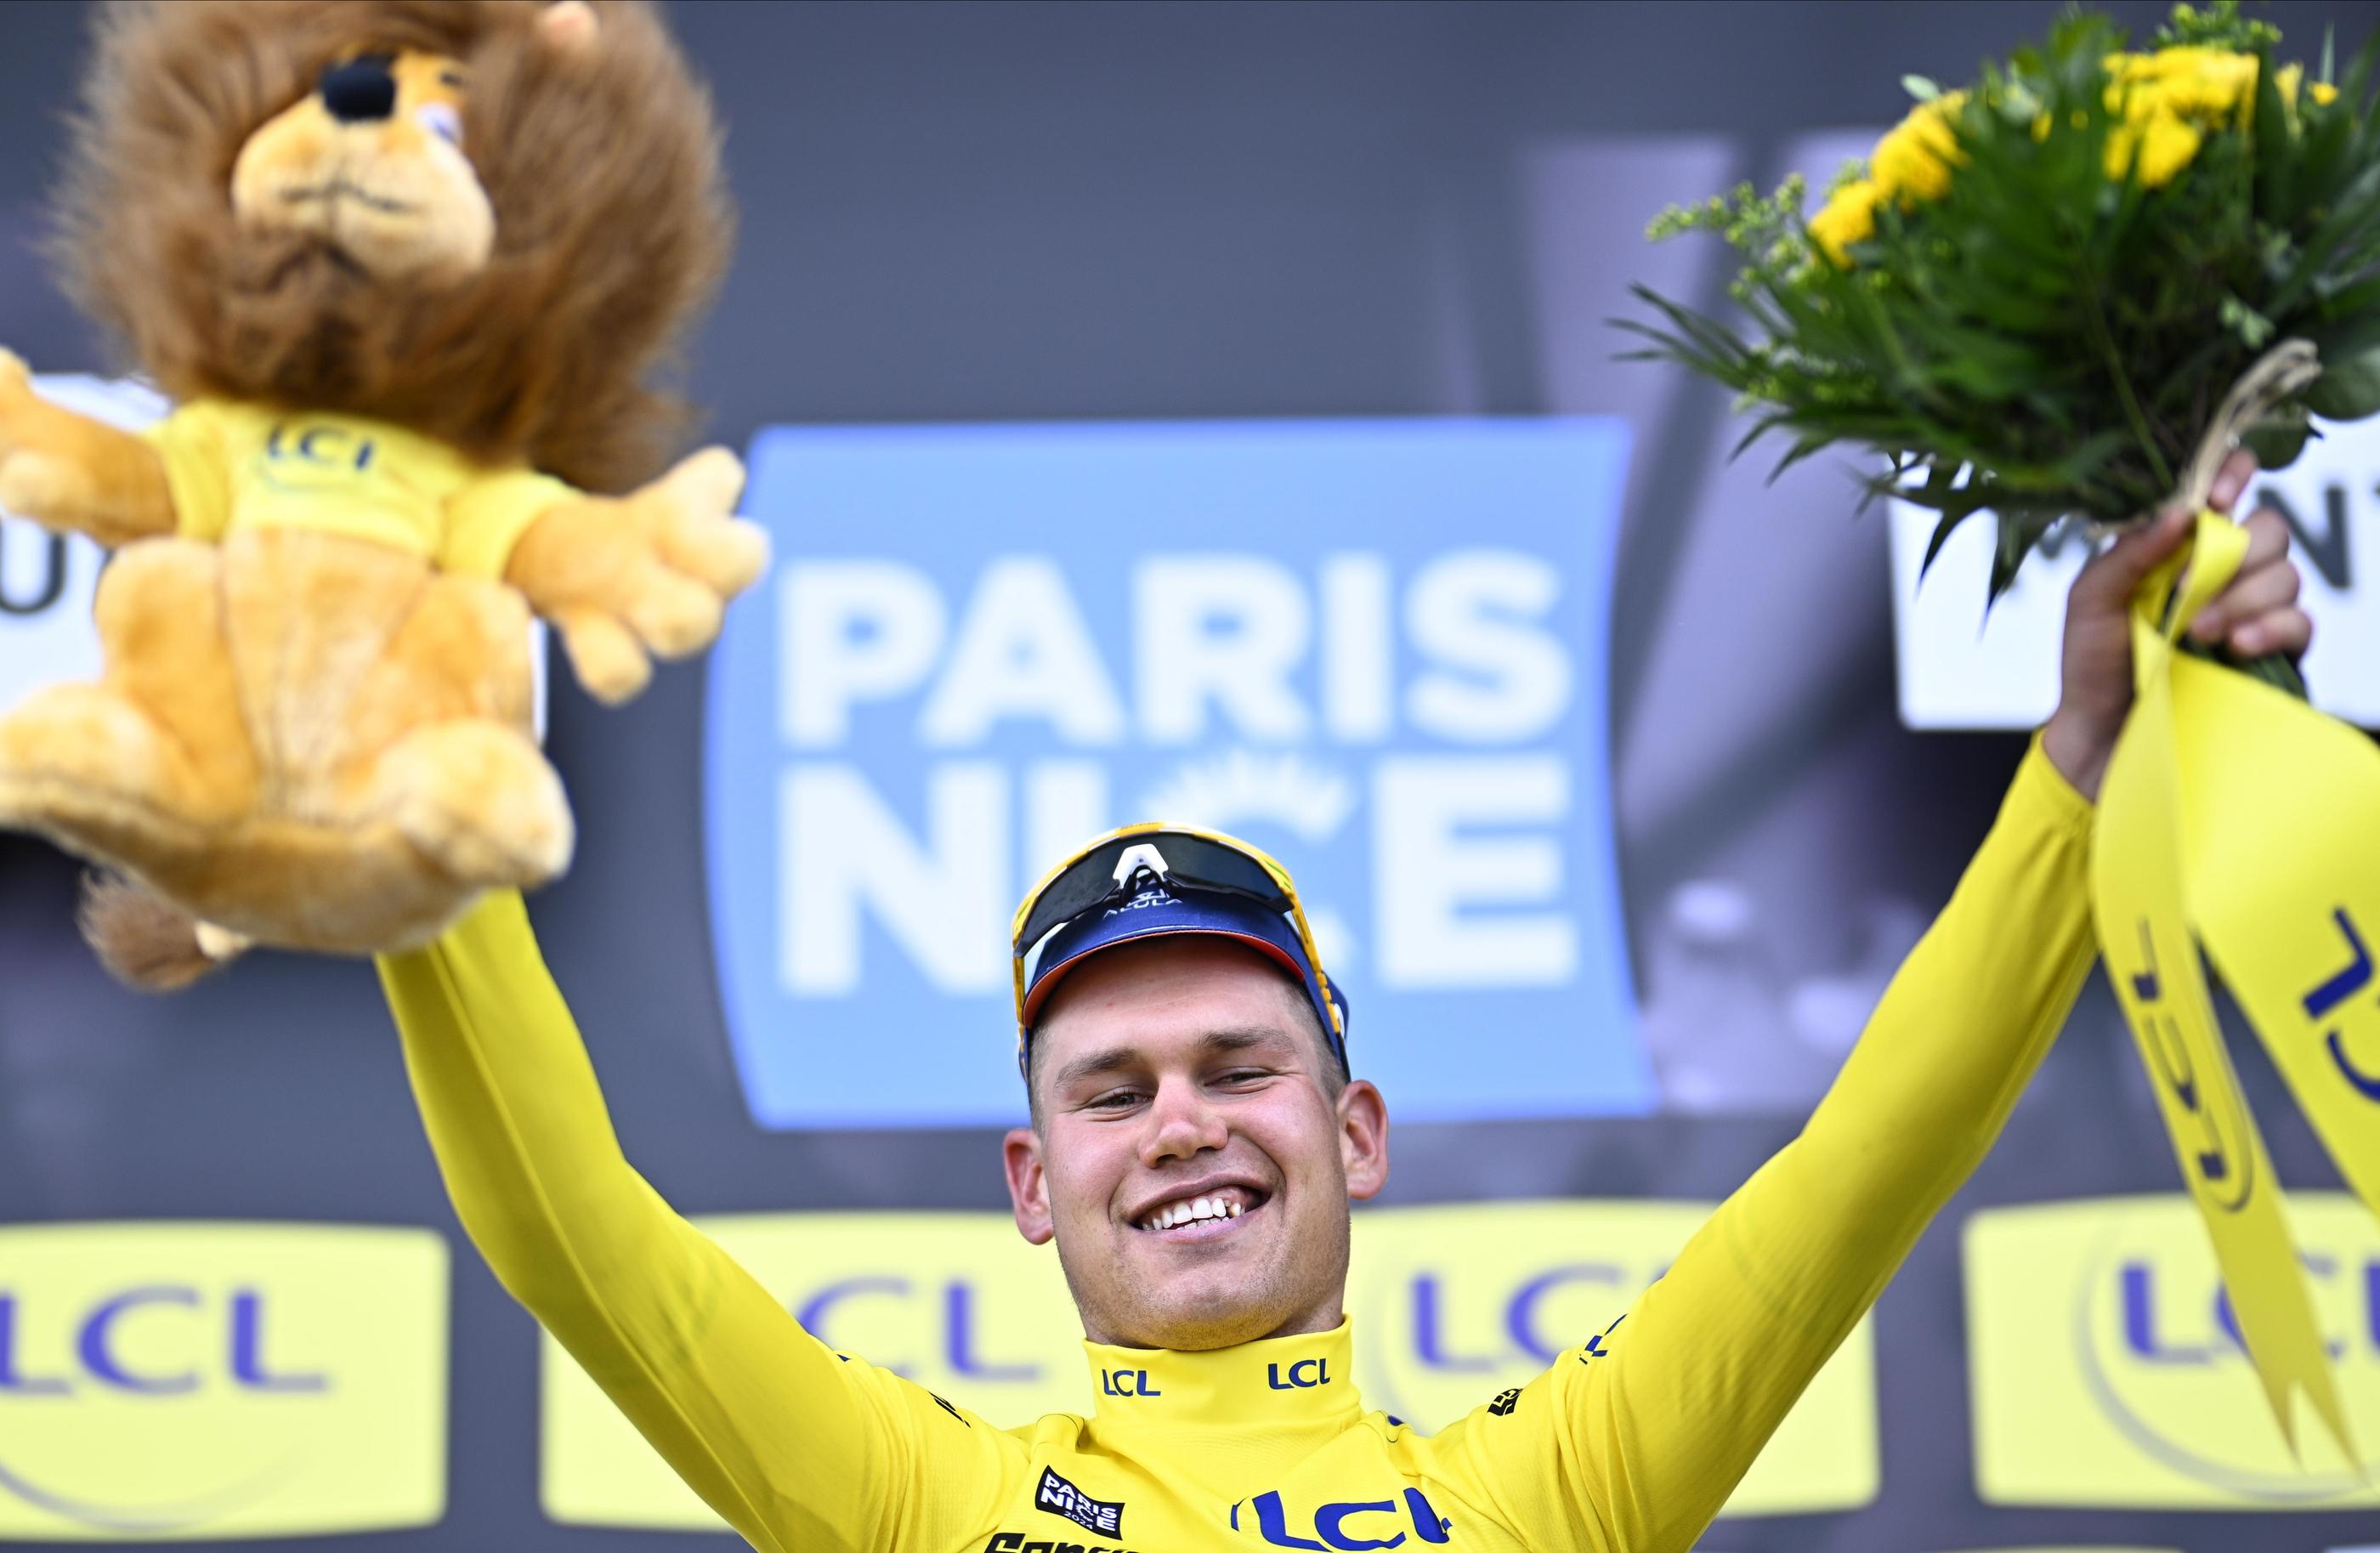 Luke Plapp, deuxième de l’étape à 10 secondes, s'empare du maillot de leader de Paris-Nice. Icon Sport